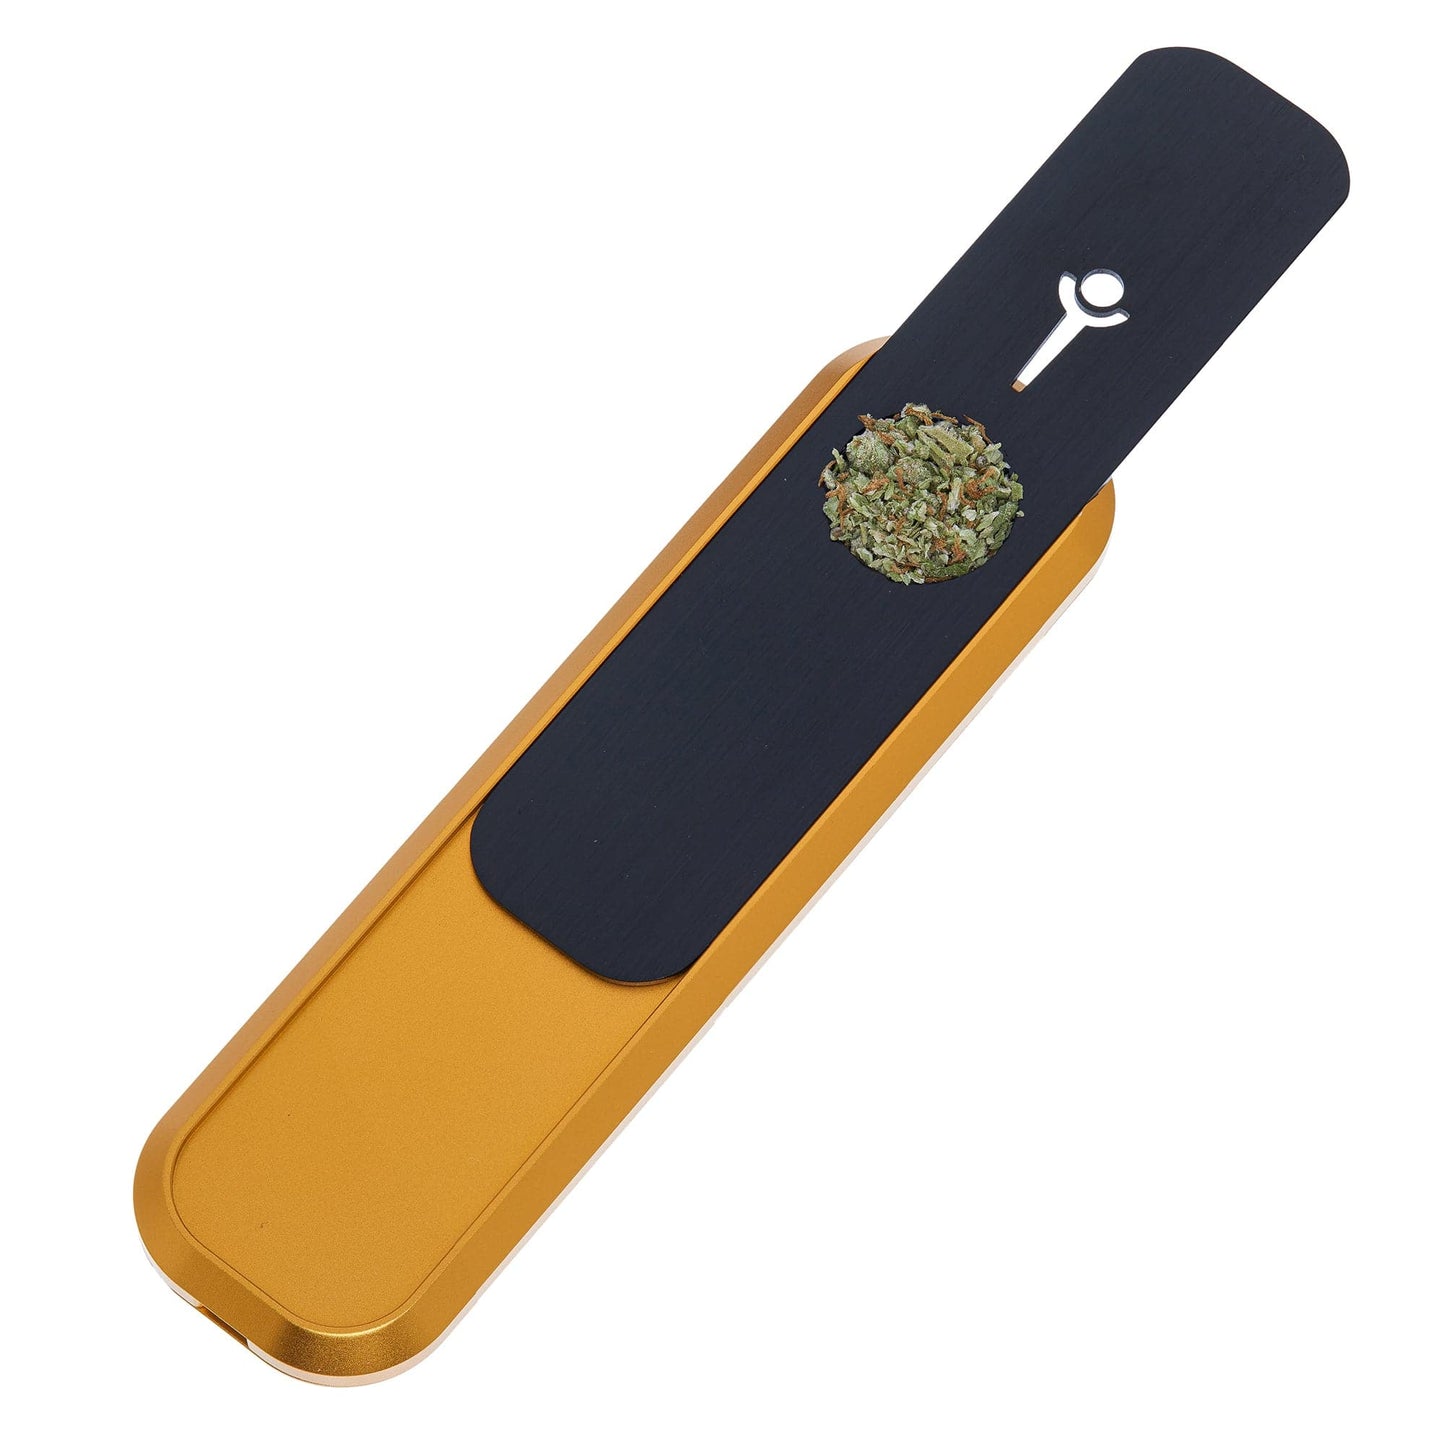 Genius Smoking Dry Herb Smoking Pipe Mini - Gold Patented air cooling system